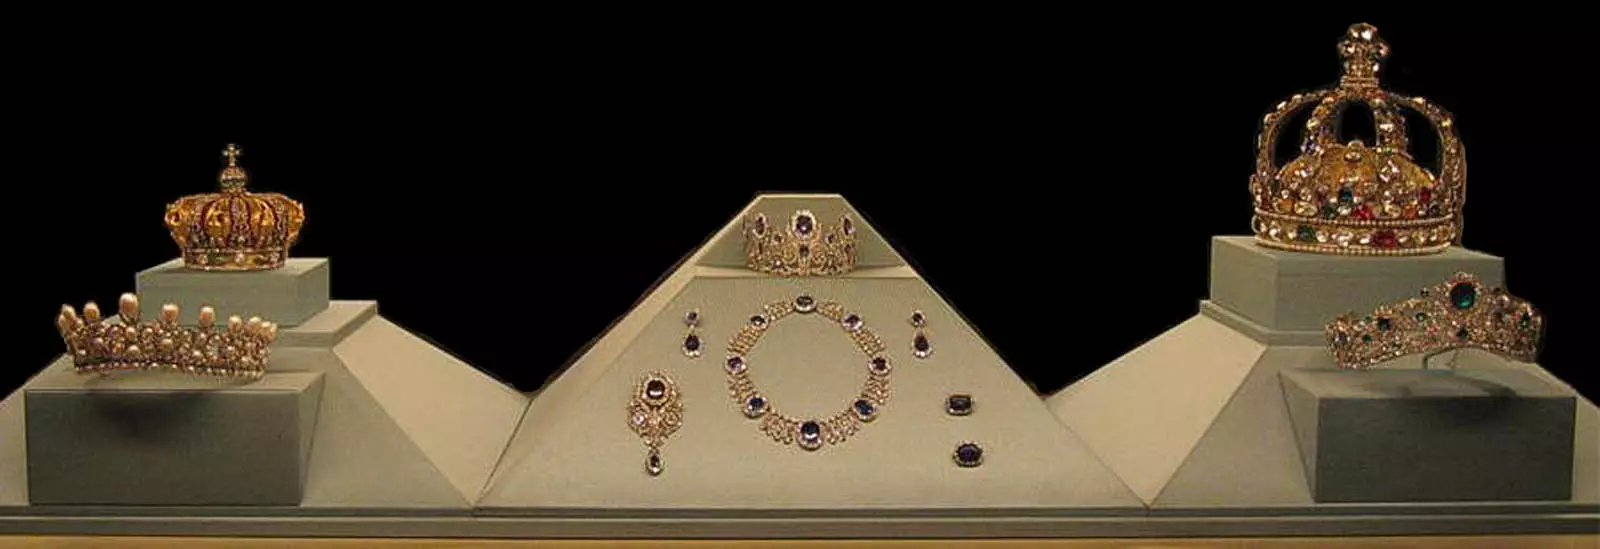 در دنیای الماس (30 عکس): داستان آلماز اولاوا و سانی، سالگرد طلایی و دیگر معروف ترین و گران قیمت الماس 3460_9